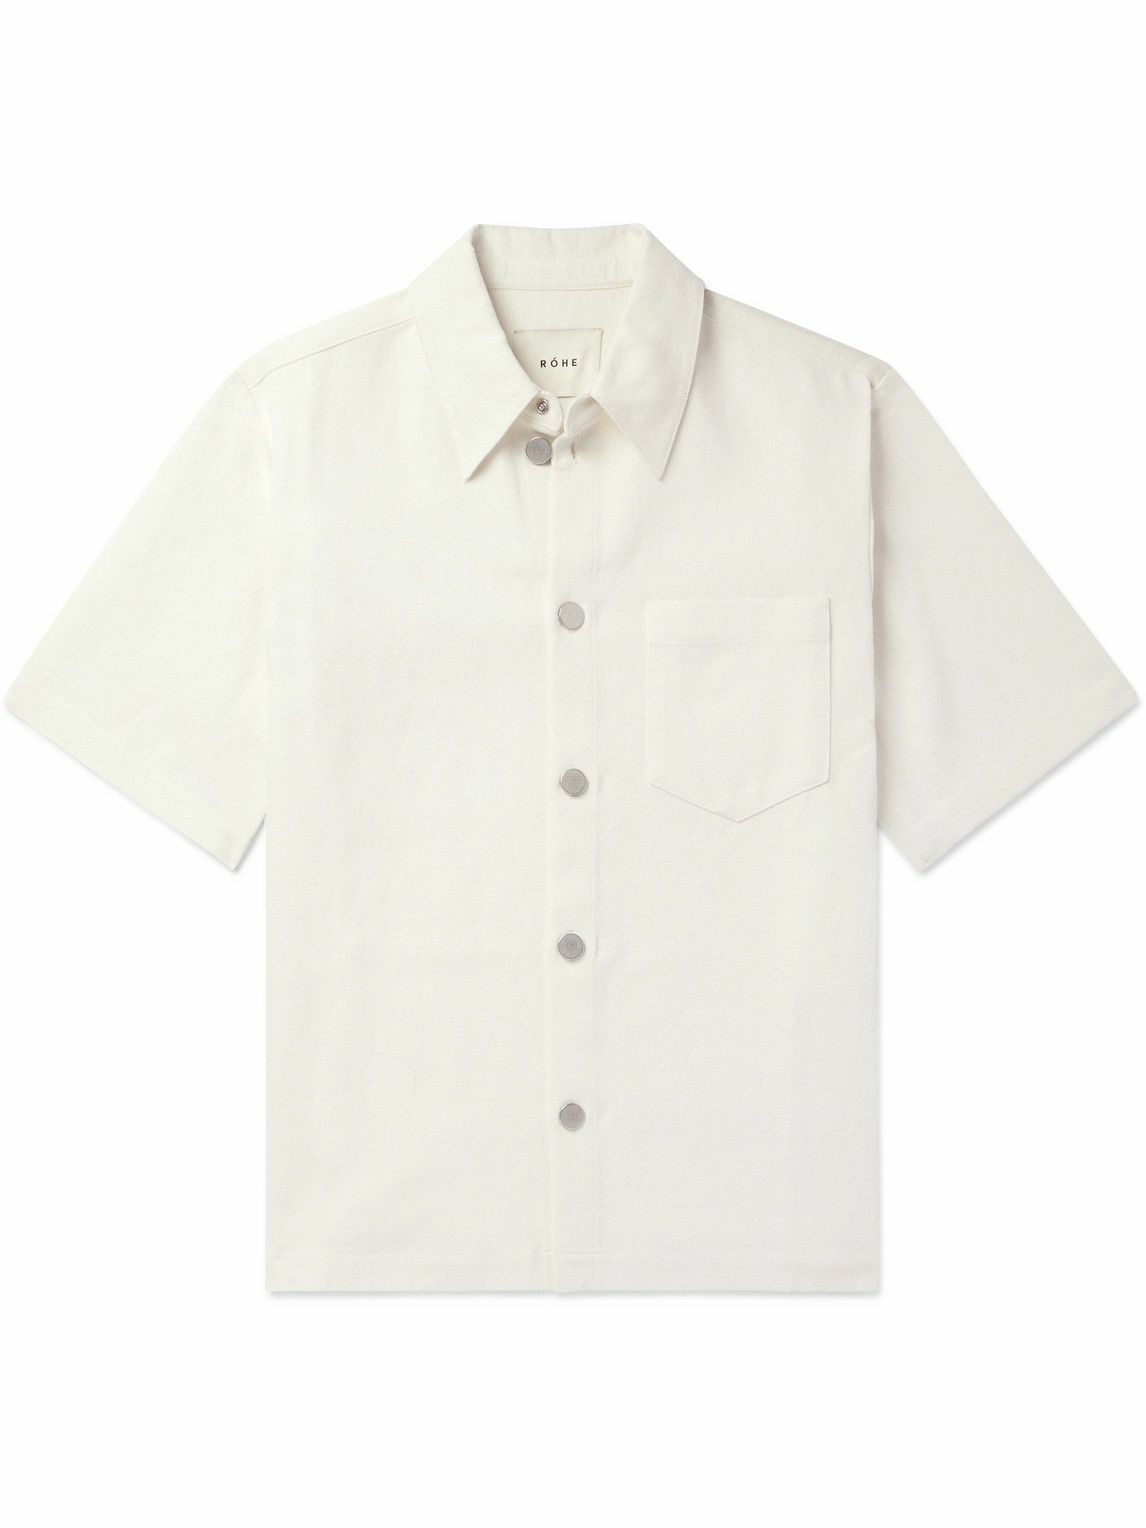 RÓHE - Cotton and Linen-Blend Twill Shirt - Neutrals